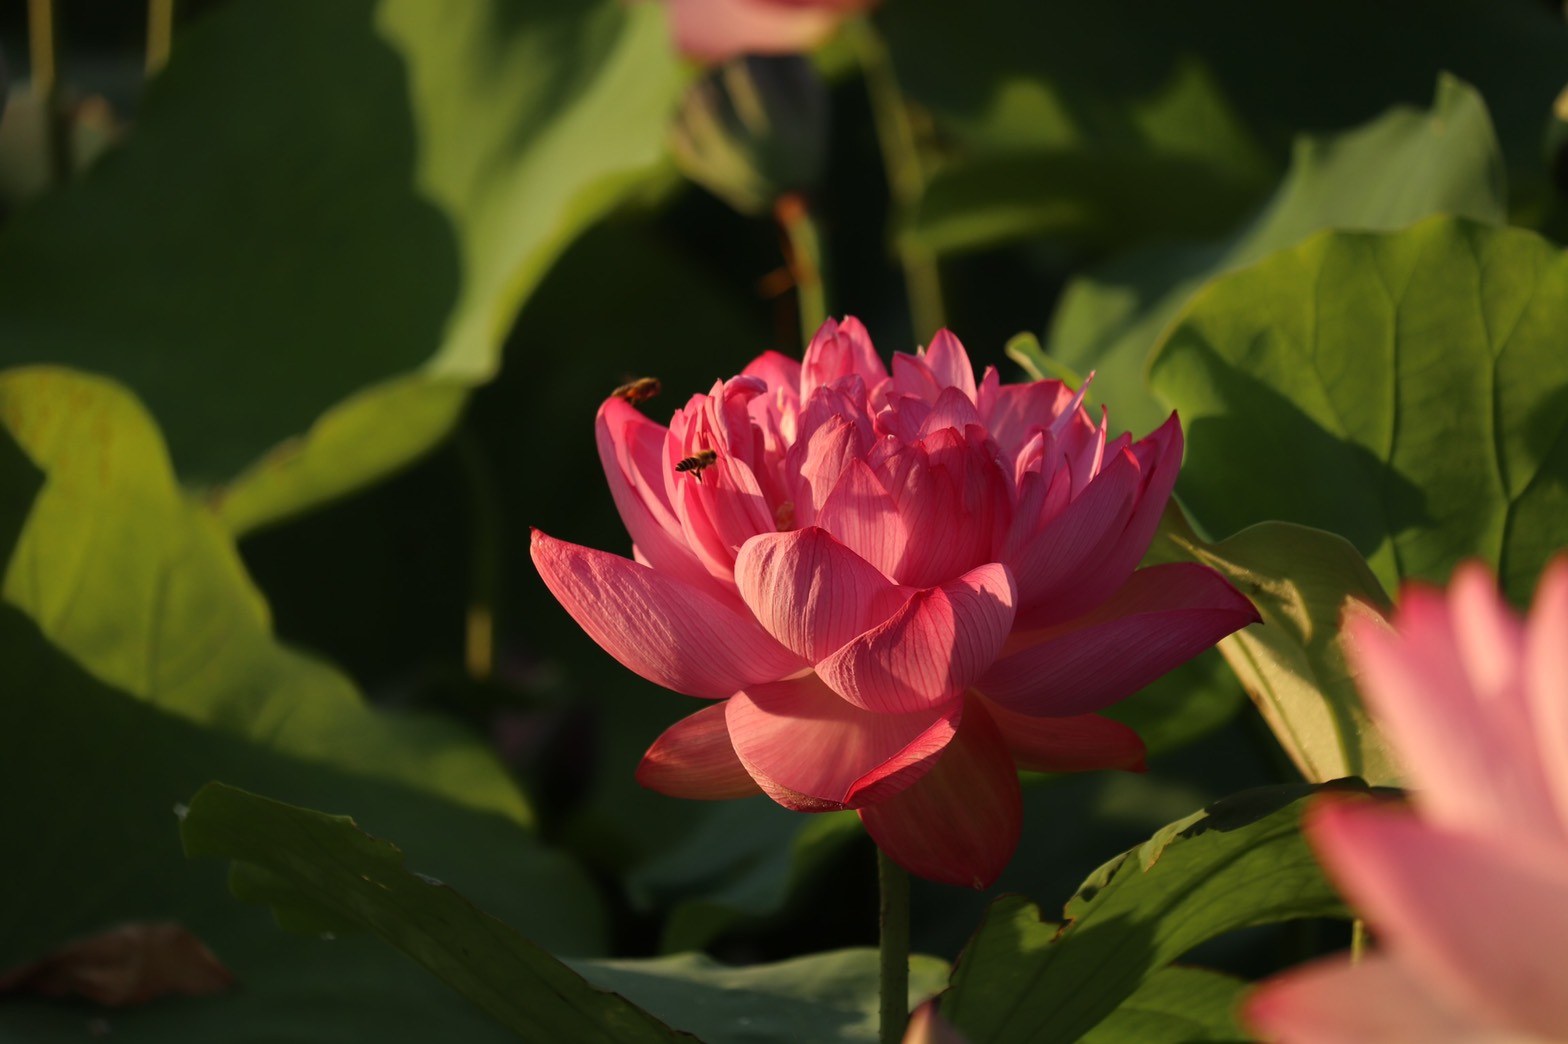 ピンク色の花びらにミツバチが止まる7月25日夜明け前に撮影された藤原宮跡ハナハスの近接写真